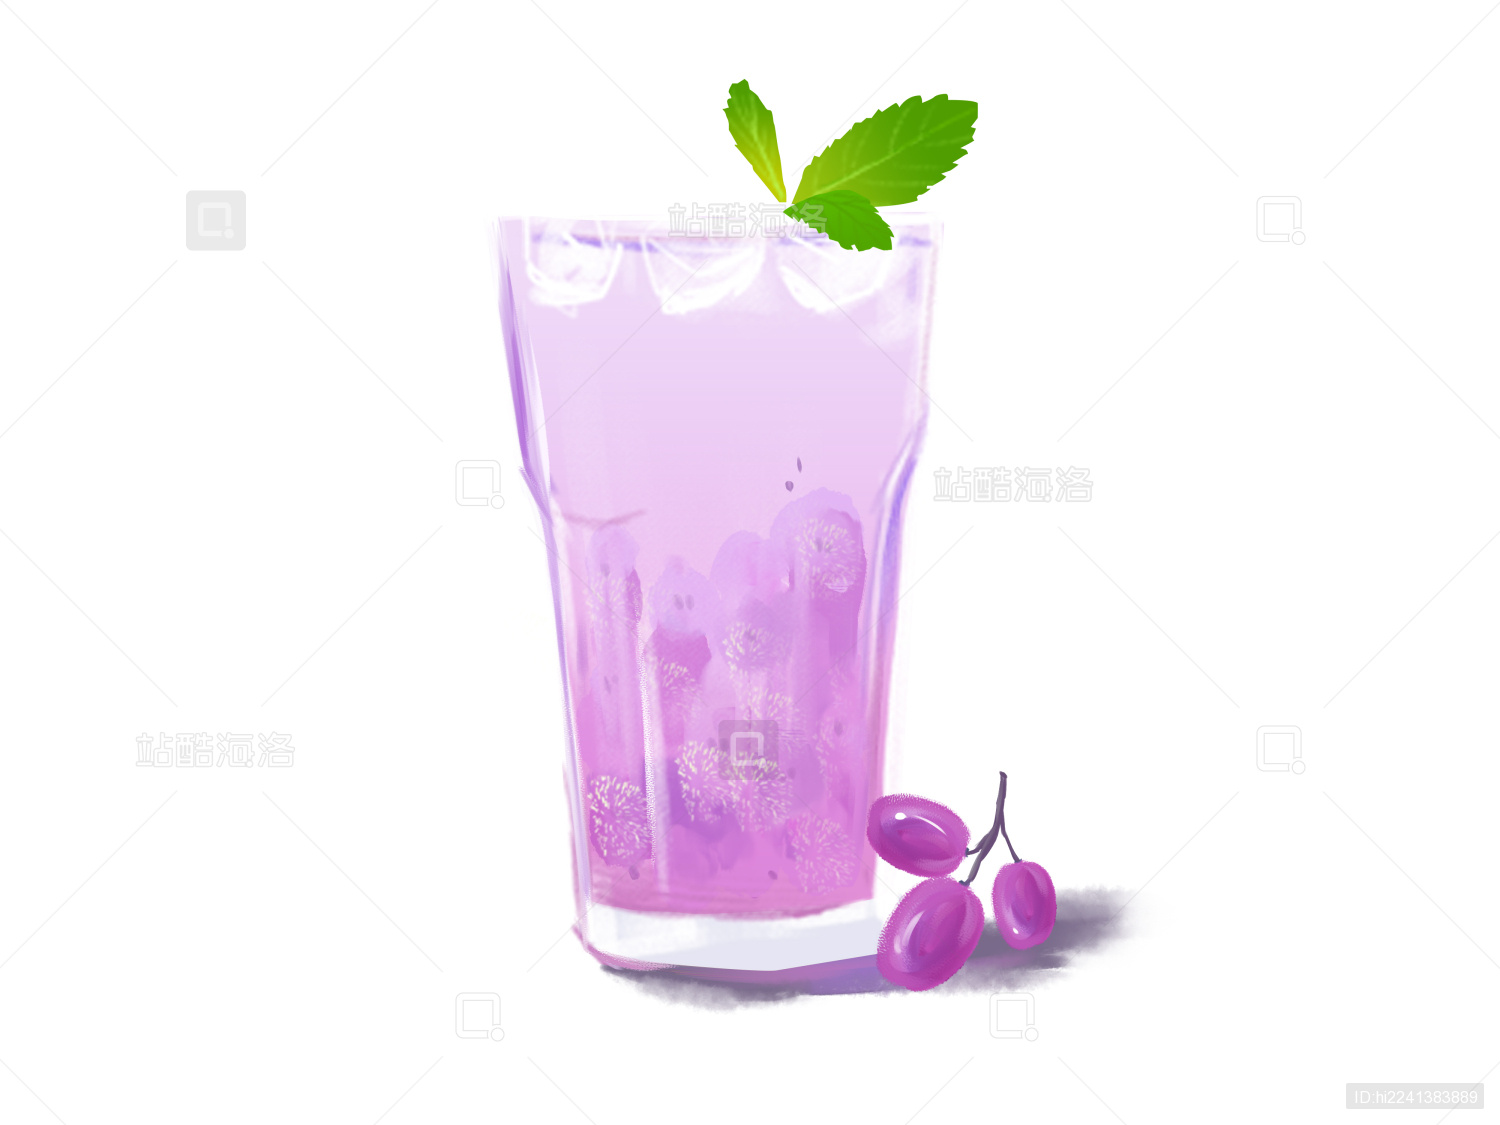 一杯在桌上的紫色圆白菜汁 库存图片. 图片 包括有 可口, 成份, 工厂, 食物, 土气, 玻璃, 紫色 - 110566497